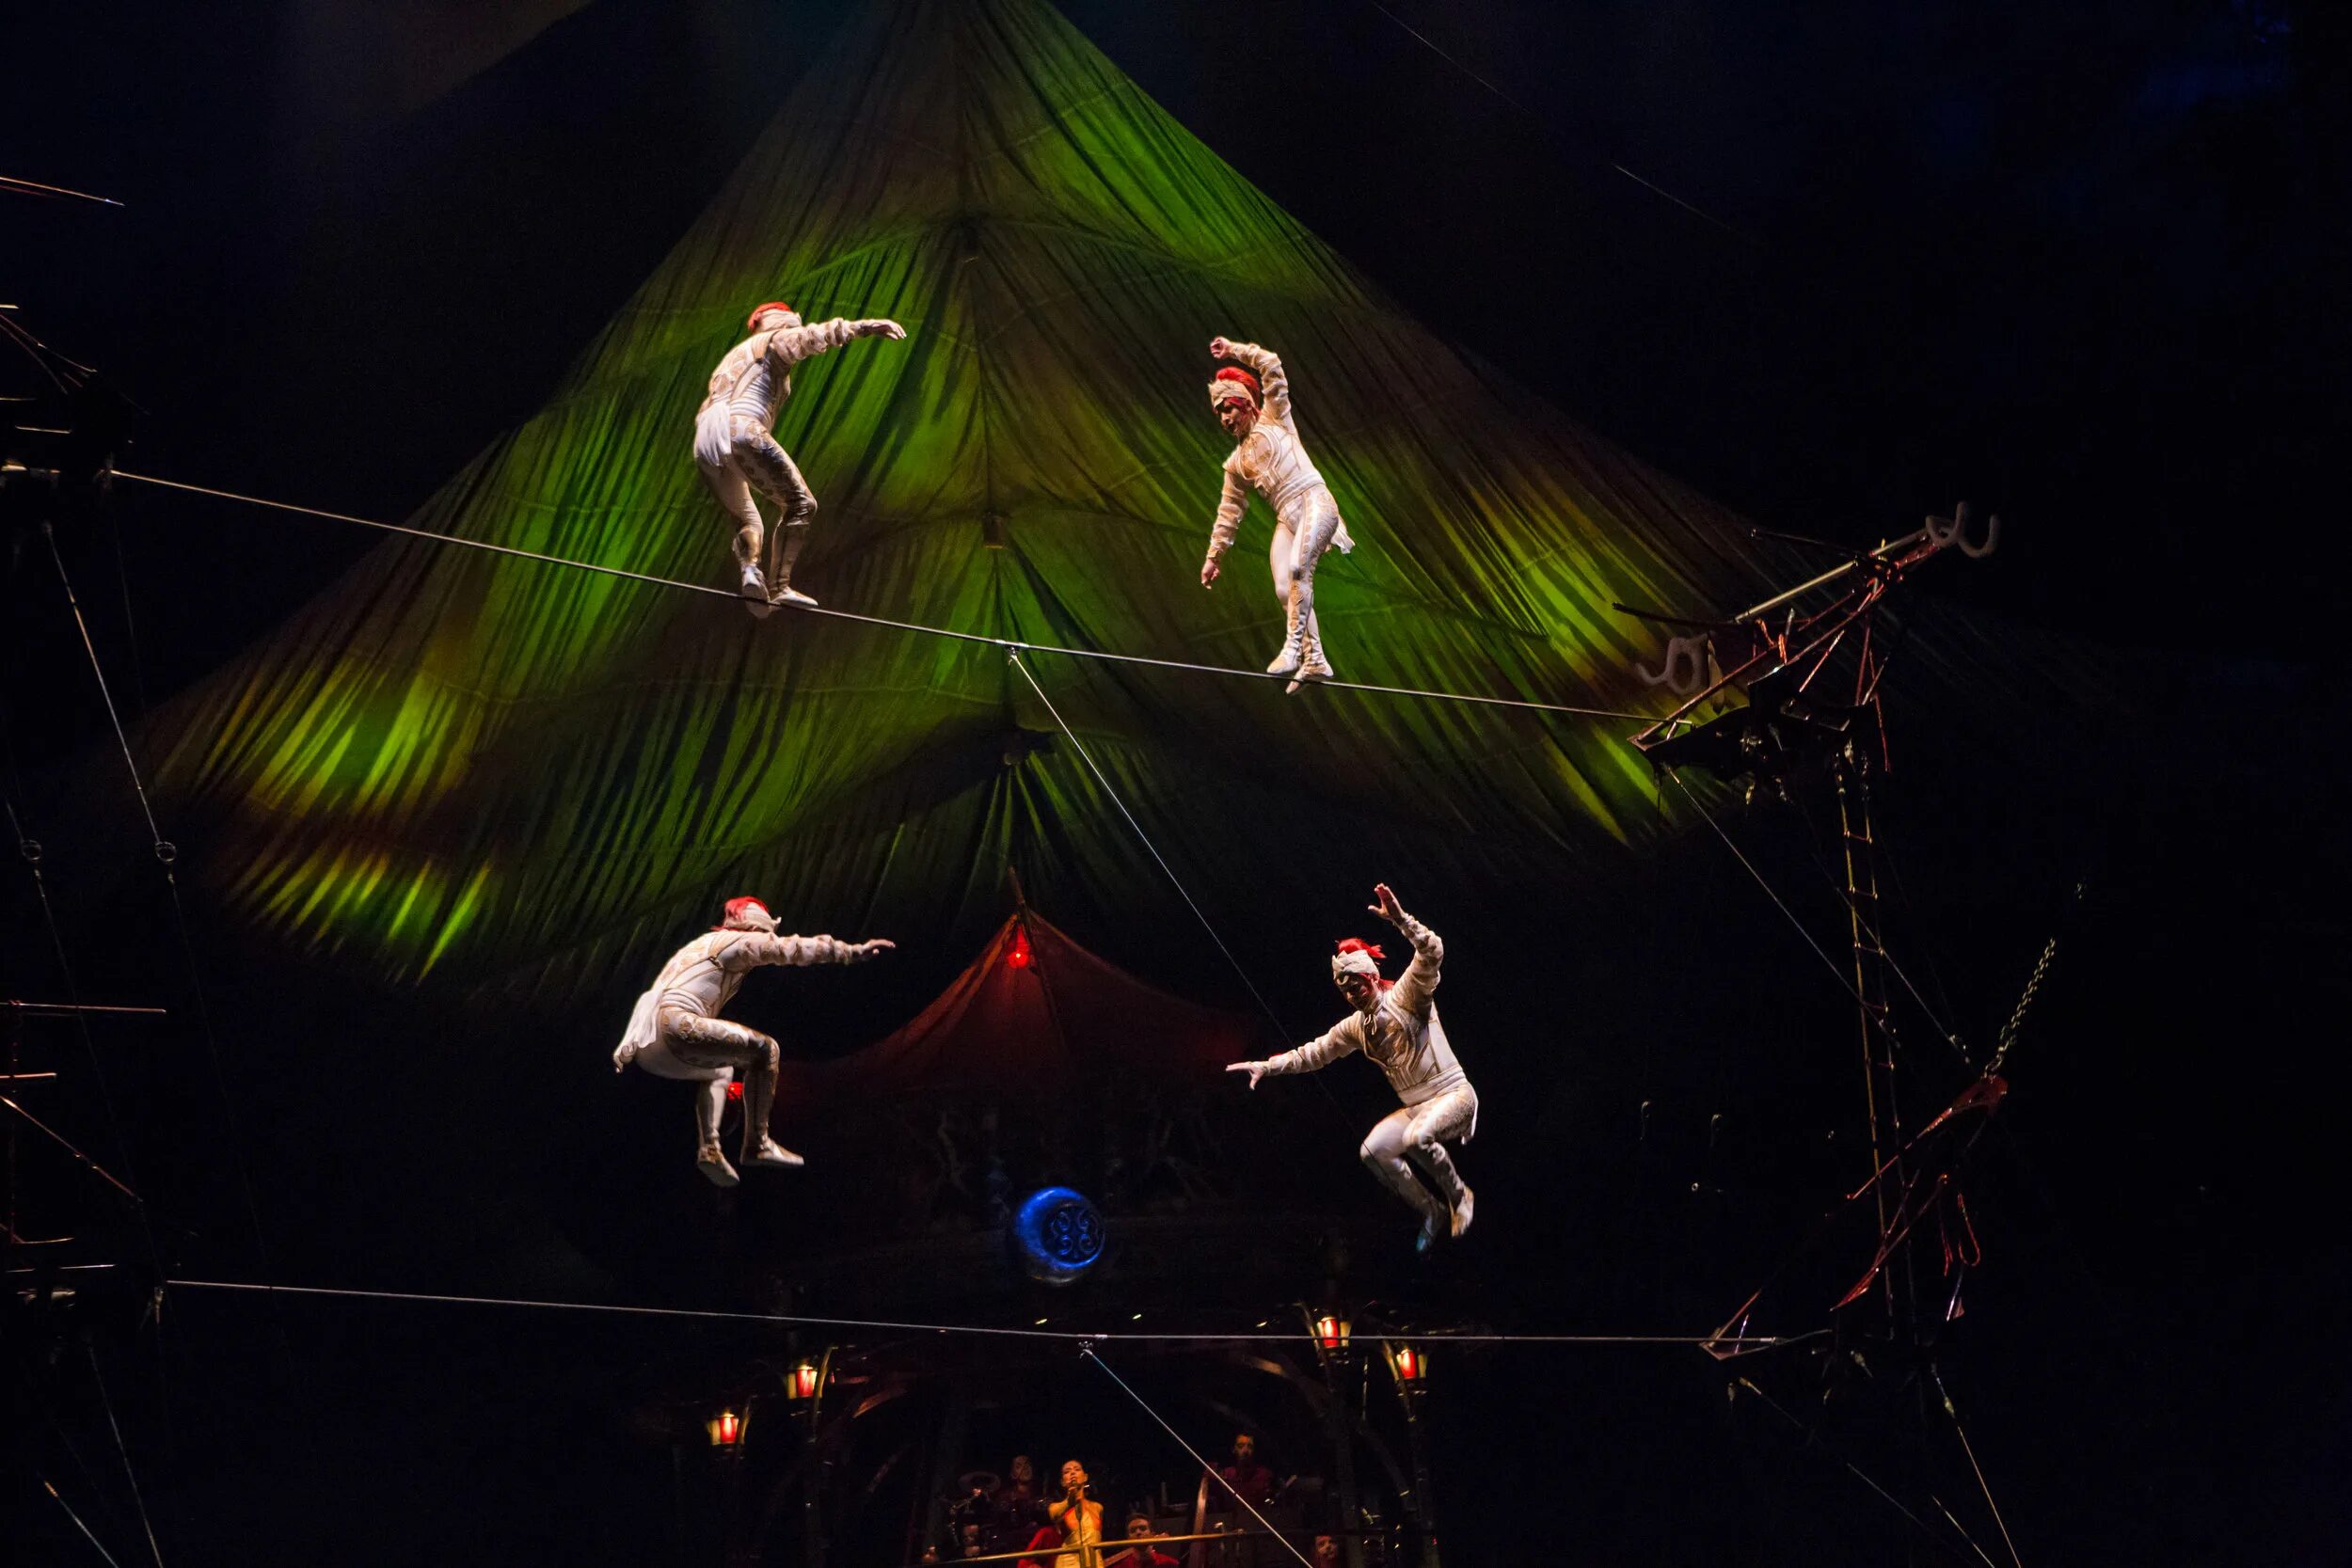 Включи новый цифровой цирк. Артисты дю солей. Цирковое шоу Cirque du Soleil. Цирк дю солей НГ 2014г.